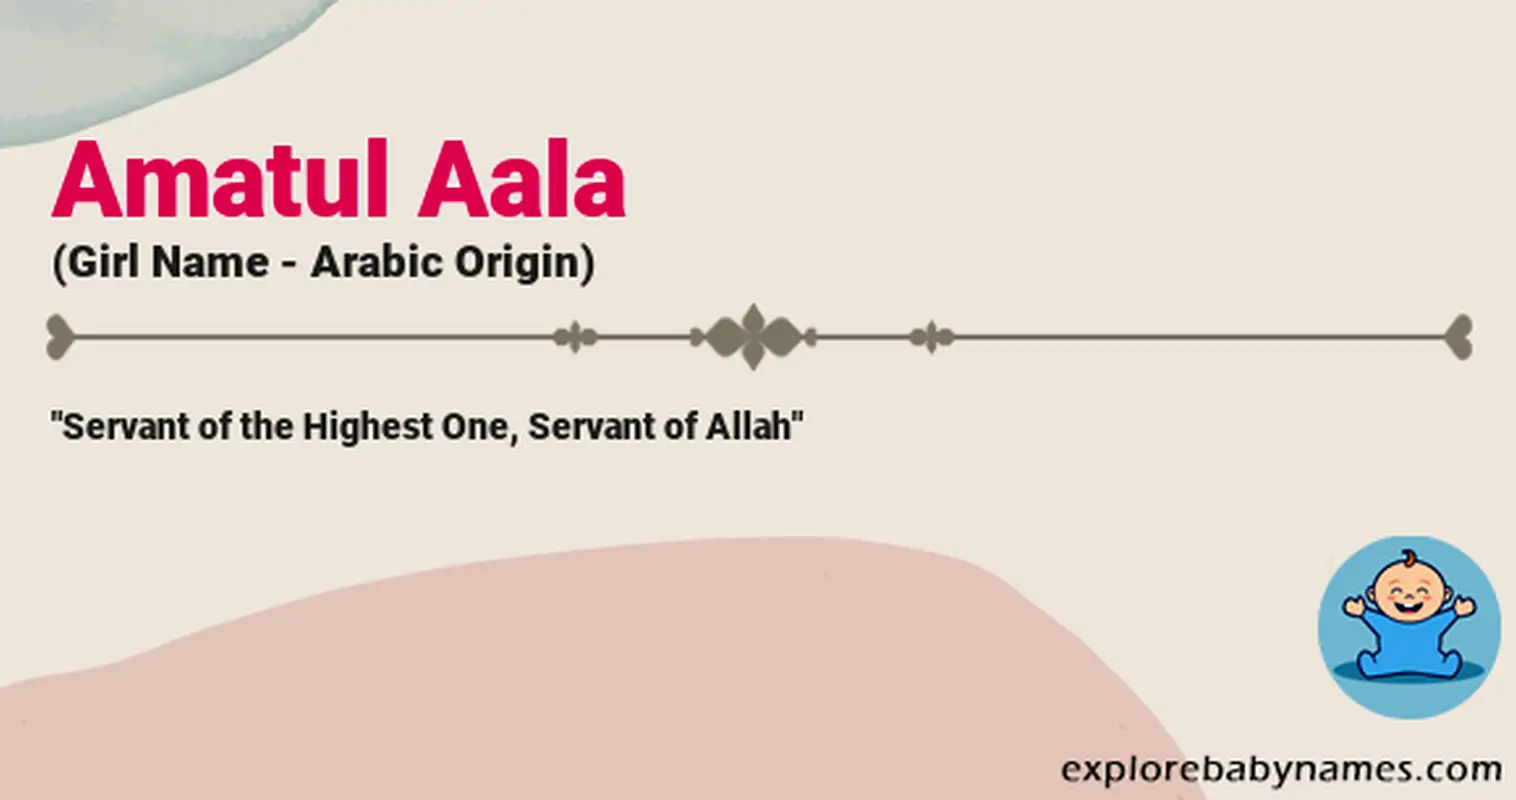 Meaning of Amatul Aala